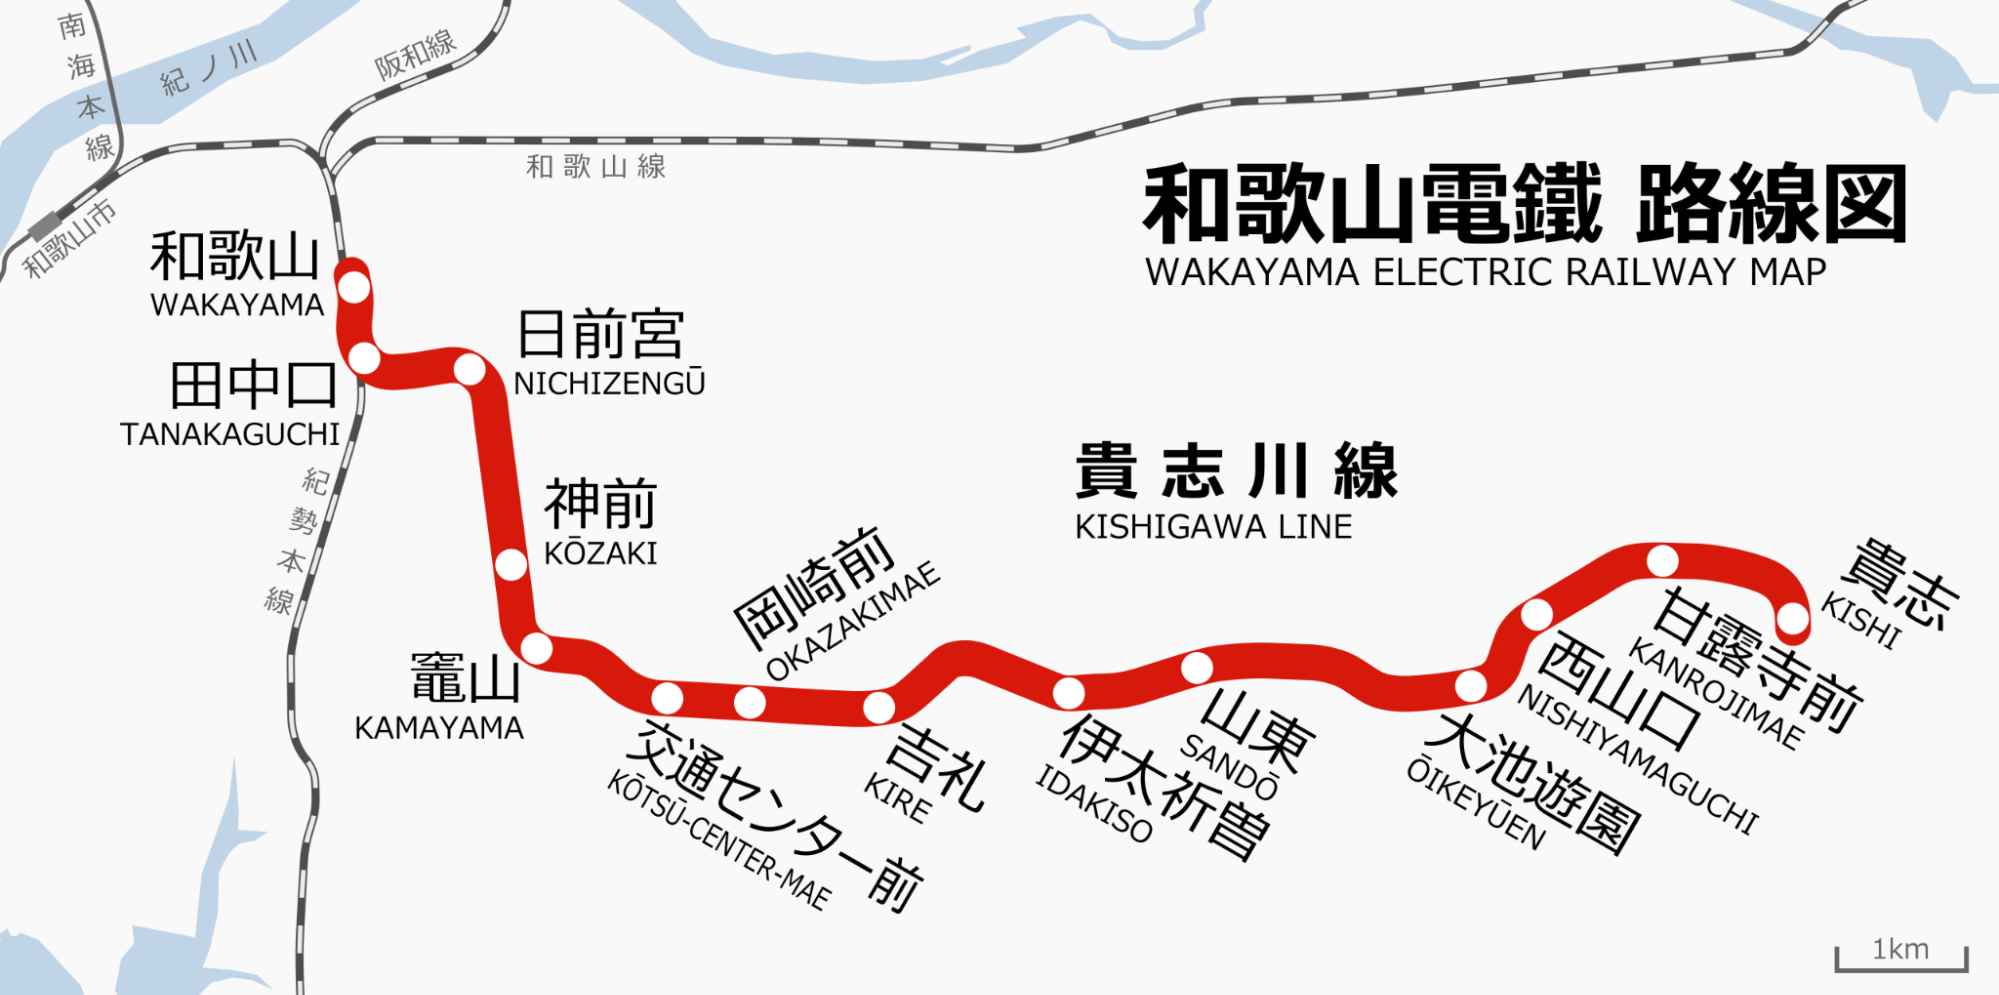 wakayama tama densha - train route